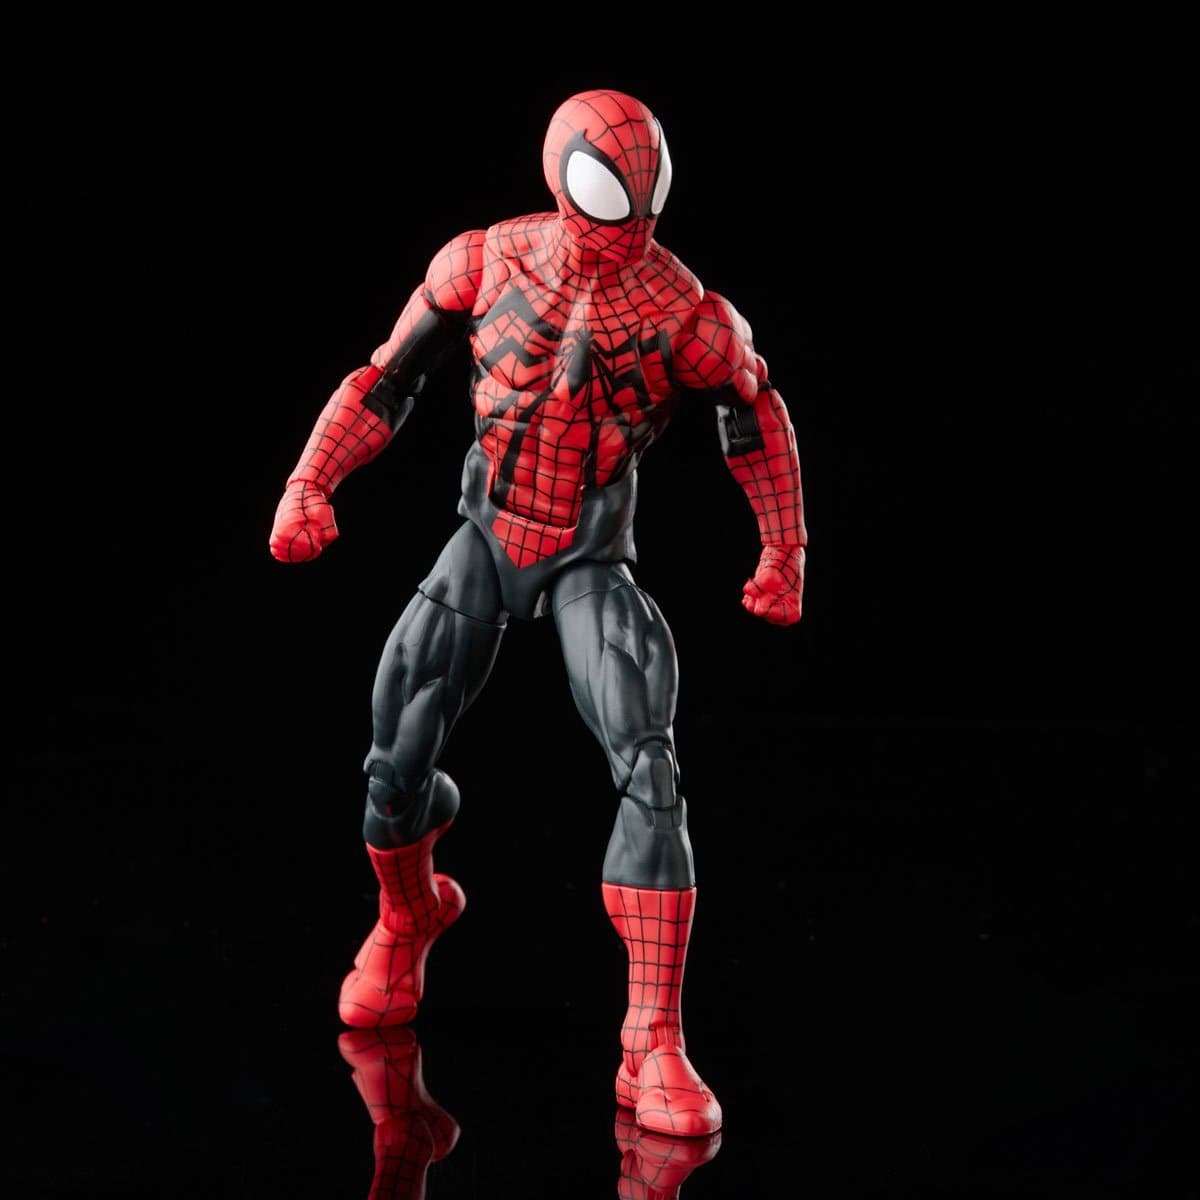 Spider-Man Retro Marvel Legends Ben Reilly Spider-Man 6-Inch Action Figure Stand Up